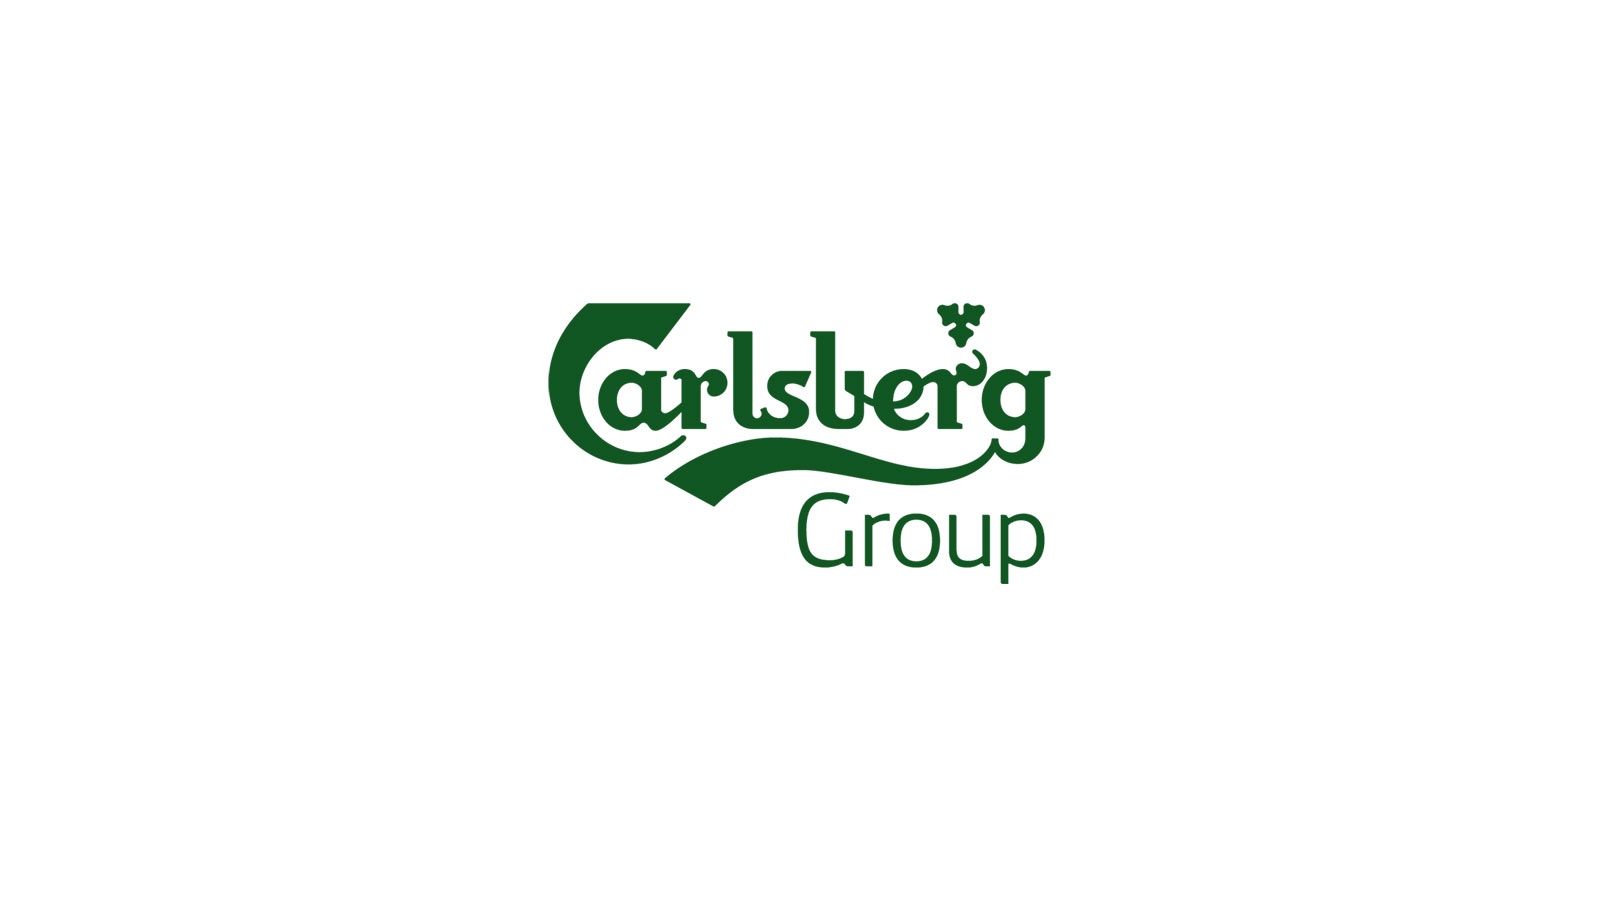 Датската пивоварна компания Carlsberg Group възнамерява да продаде всичките си